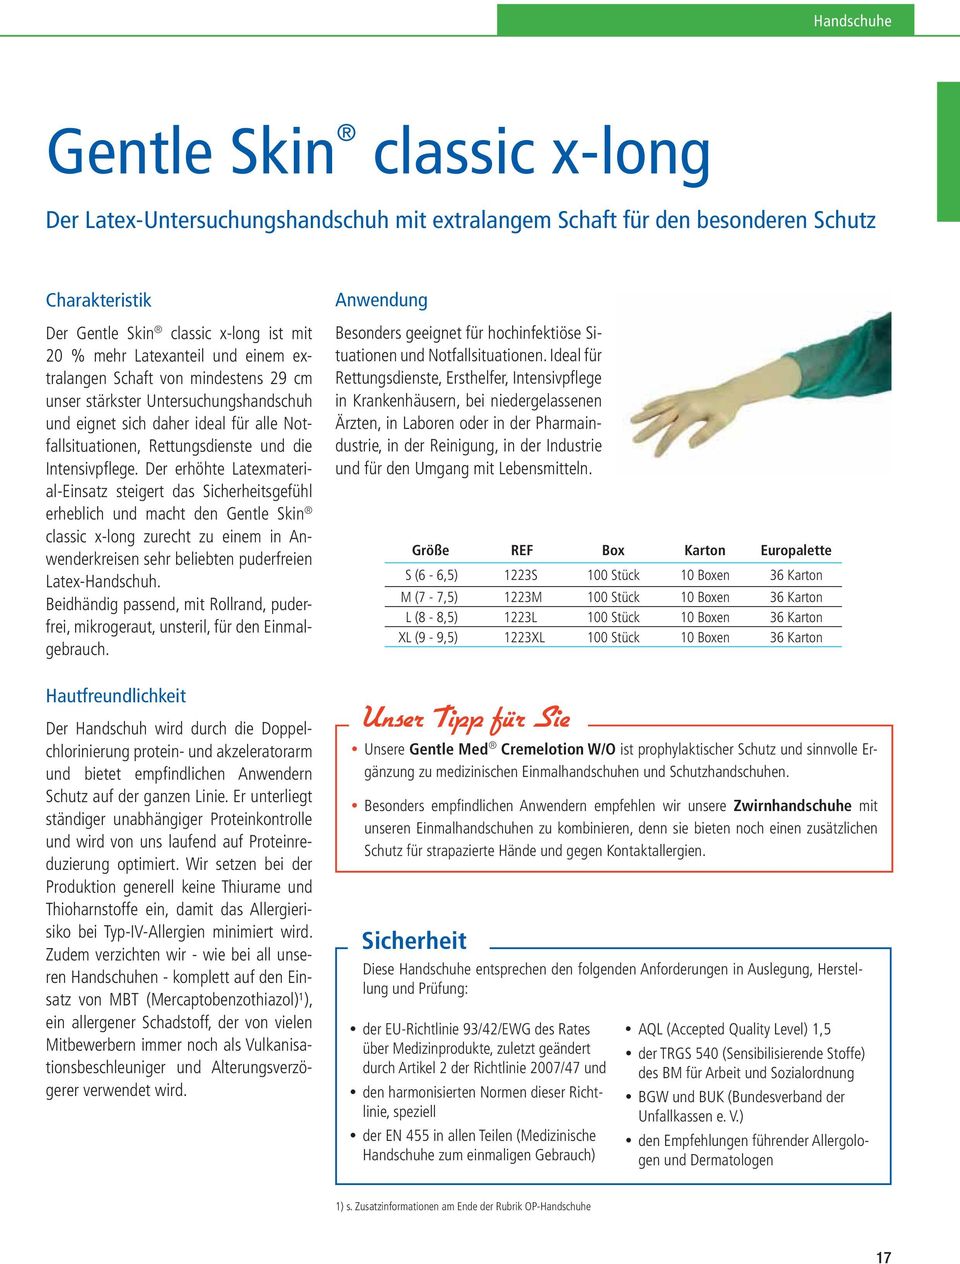 Der erhöhte Latexmaterial-Einsatz steigert das Sicherheitsgefühl erheblich und macht den Gentle Skin classic x-long zurecht zu einem in Anwenderkreisen sehr beliebten puderfreien Latex-Handschuh.